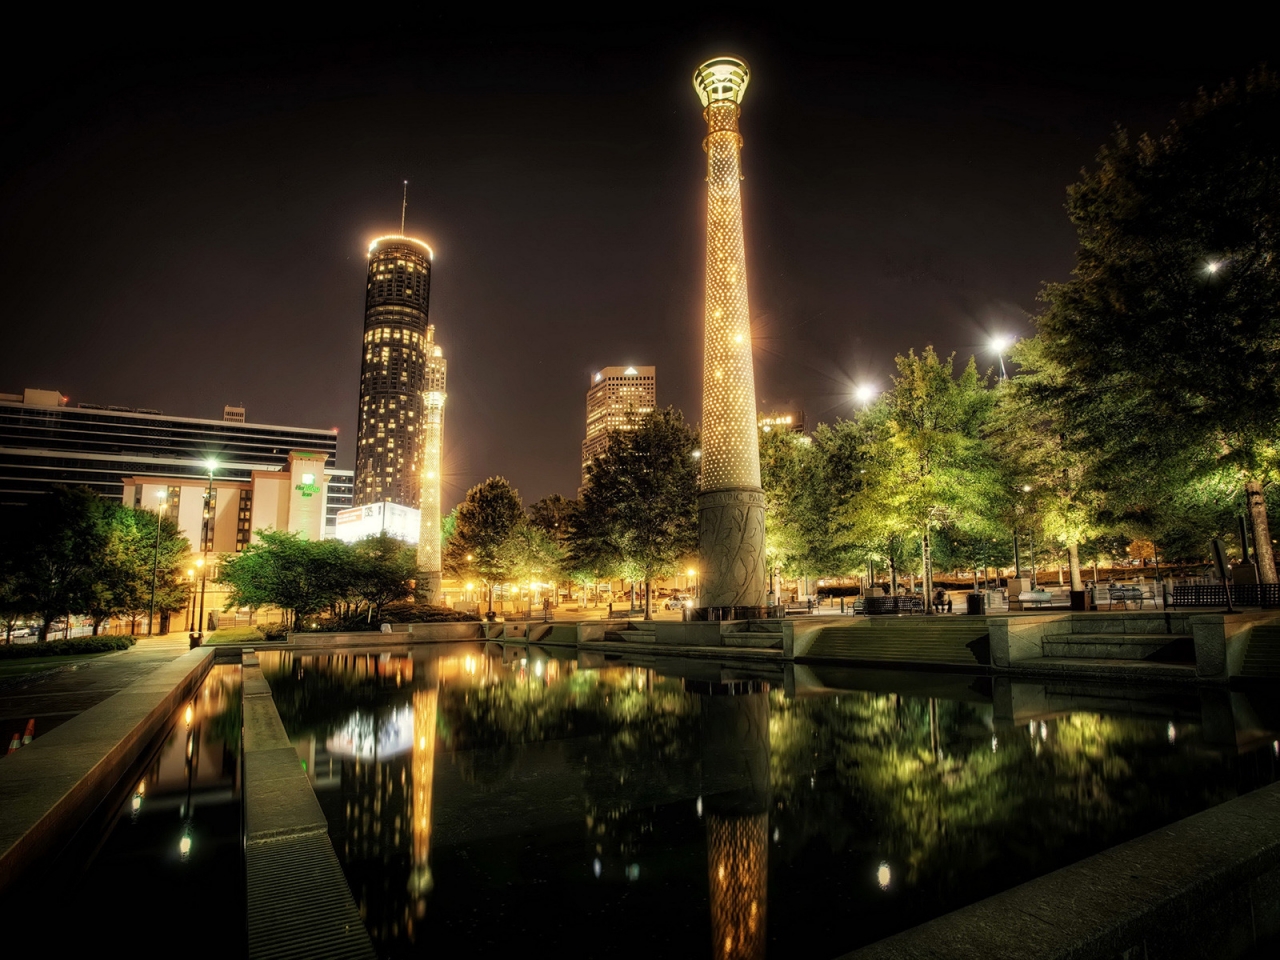 Park Centennial Atlanta Night for 1280 x 960 resolution